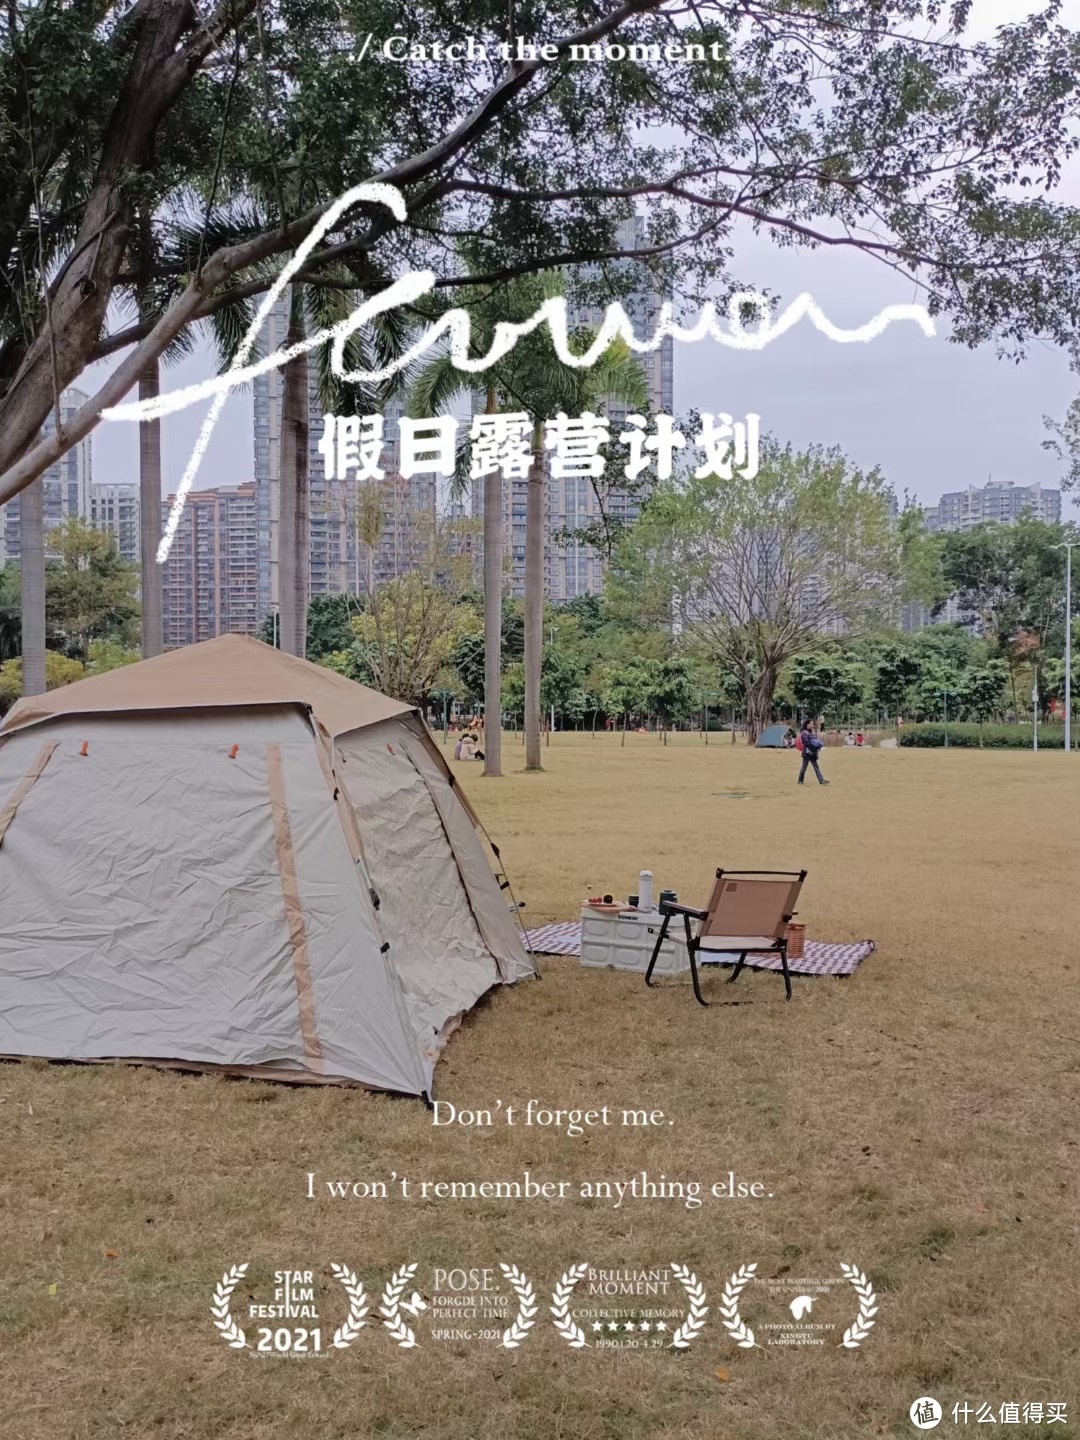 在公园里不打地钉的情况下，帐篷形状不够挺拔，但整体造型相对完整